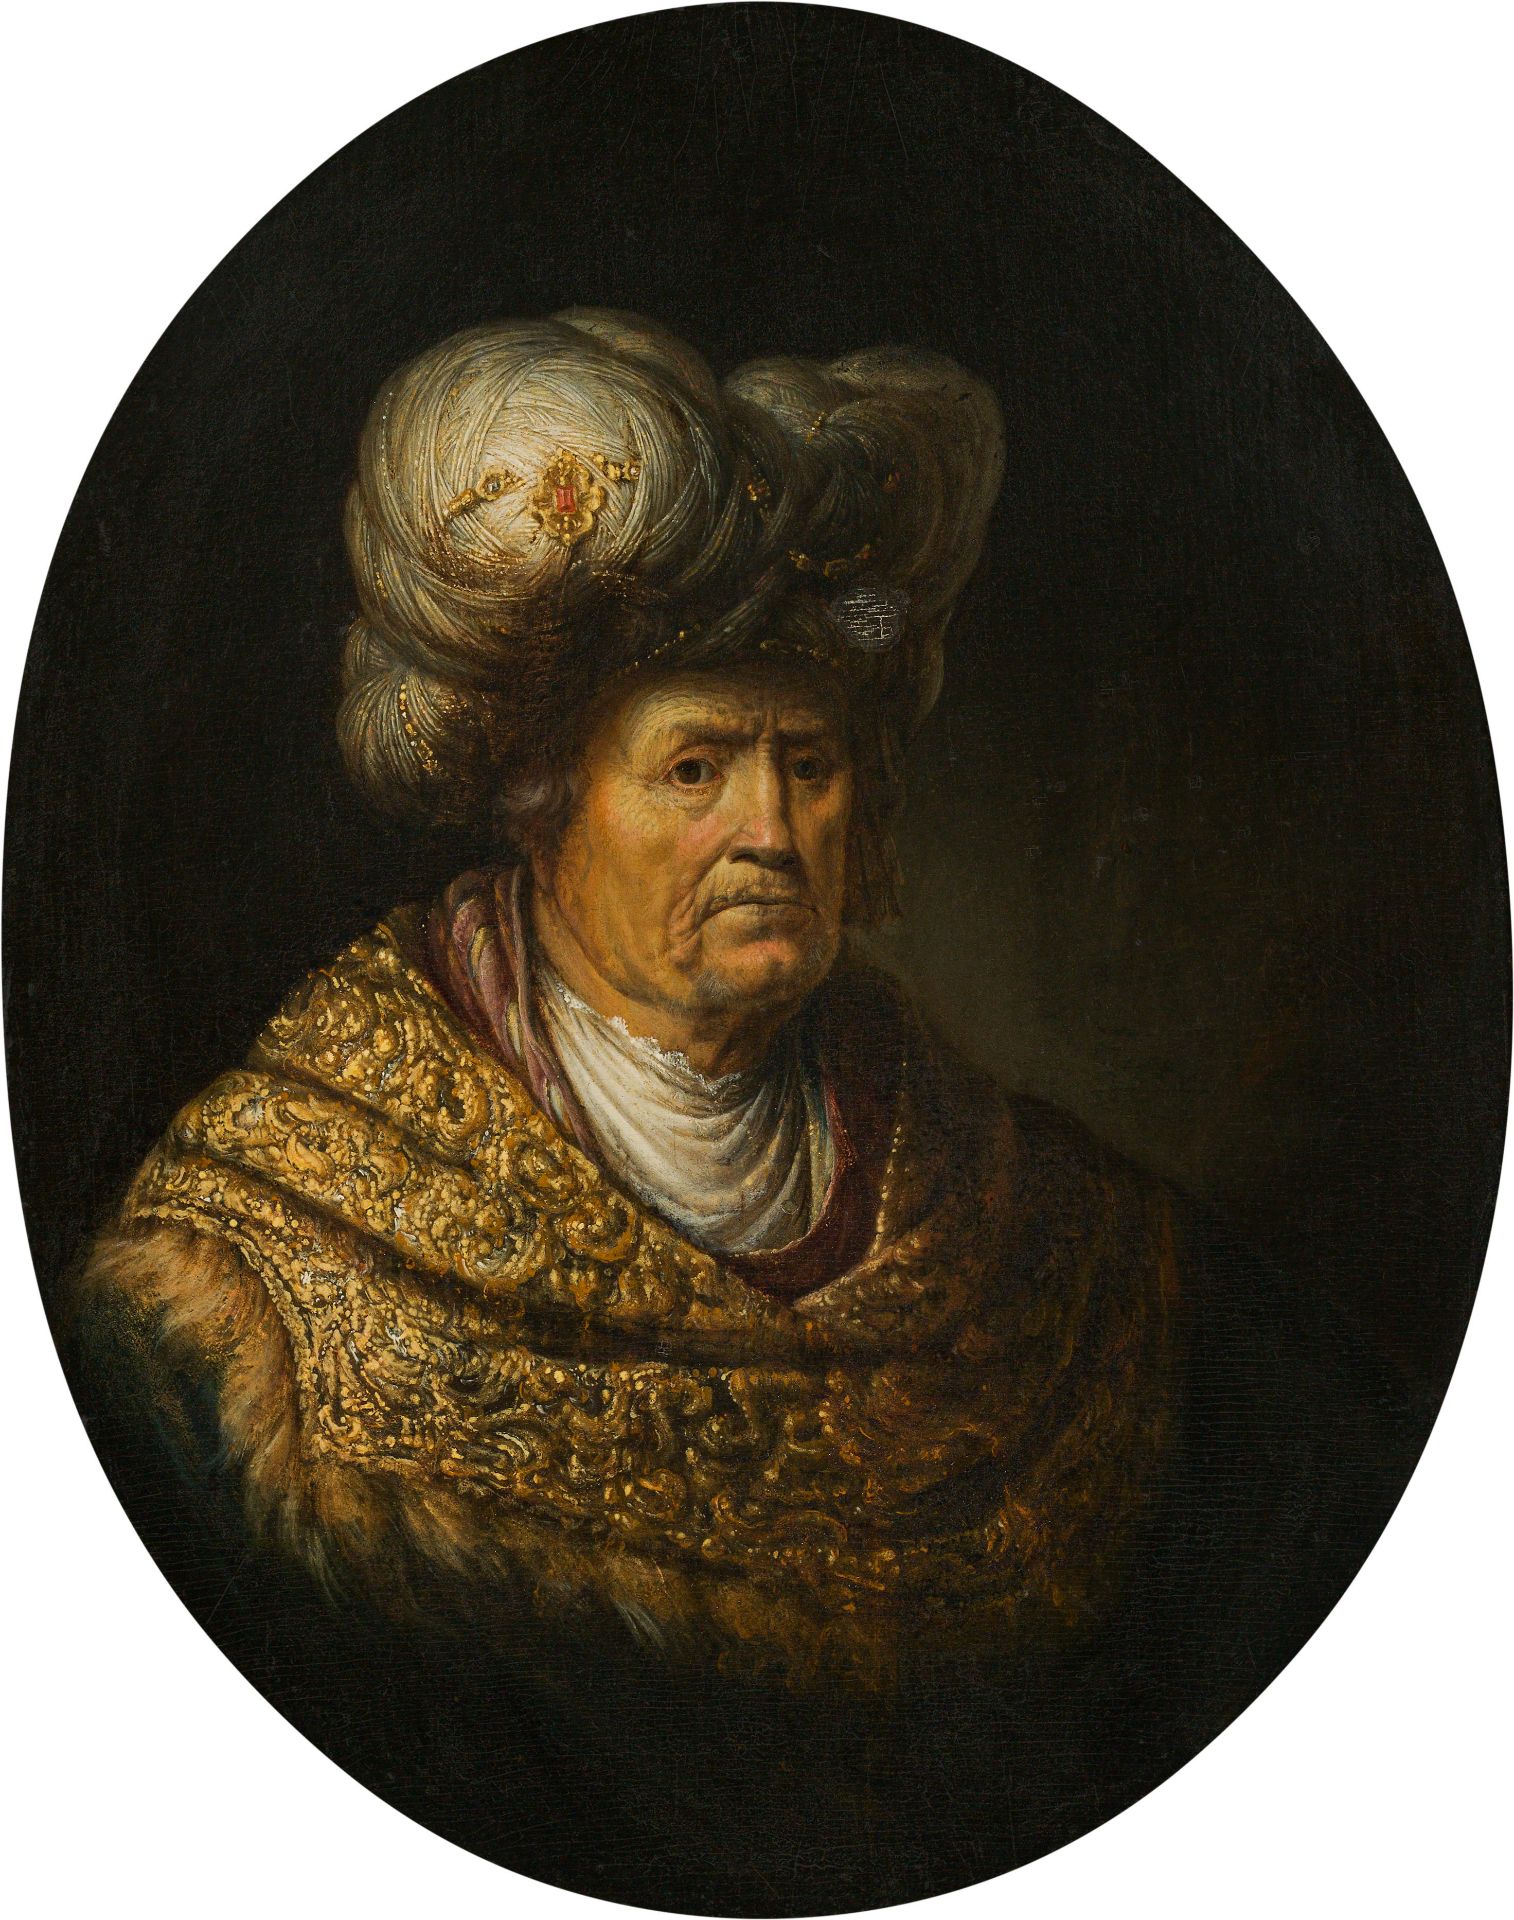 Jan Adriaensz. van Staveren: Portrait of a man with a turban